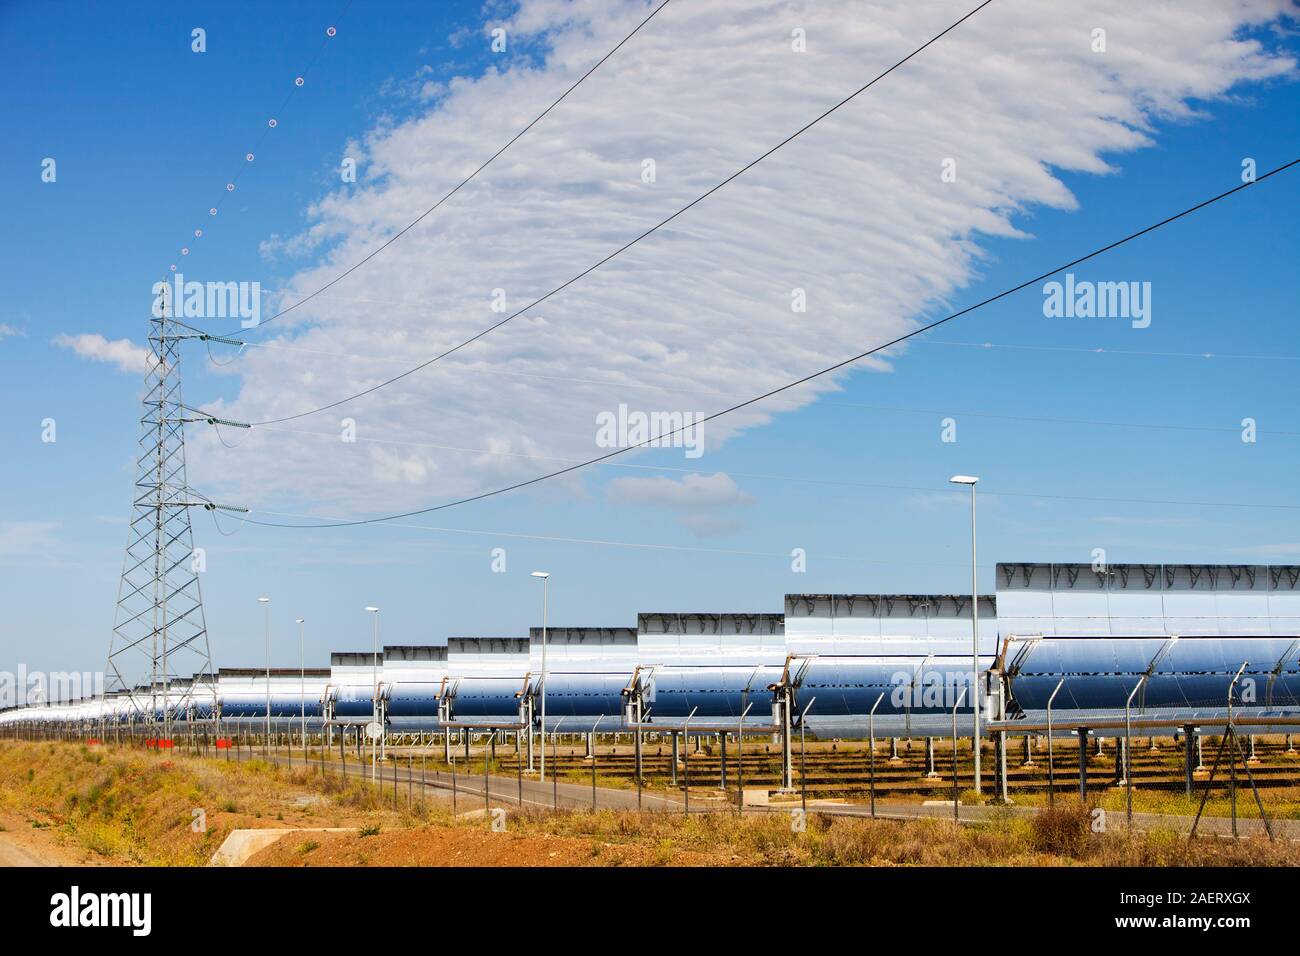 La estación de energía solar Andasol, cerca de Guadix, en Andalucía, España, es la primera y más grande de colectores cilindro parabólicos térmica solar Power Station. Era Foto de stock